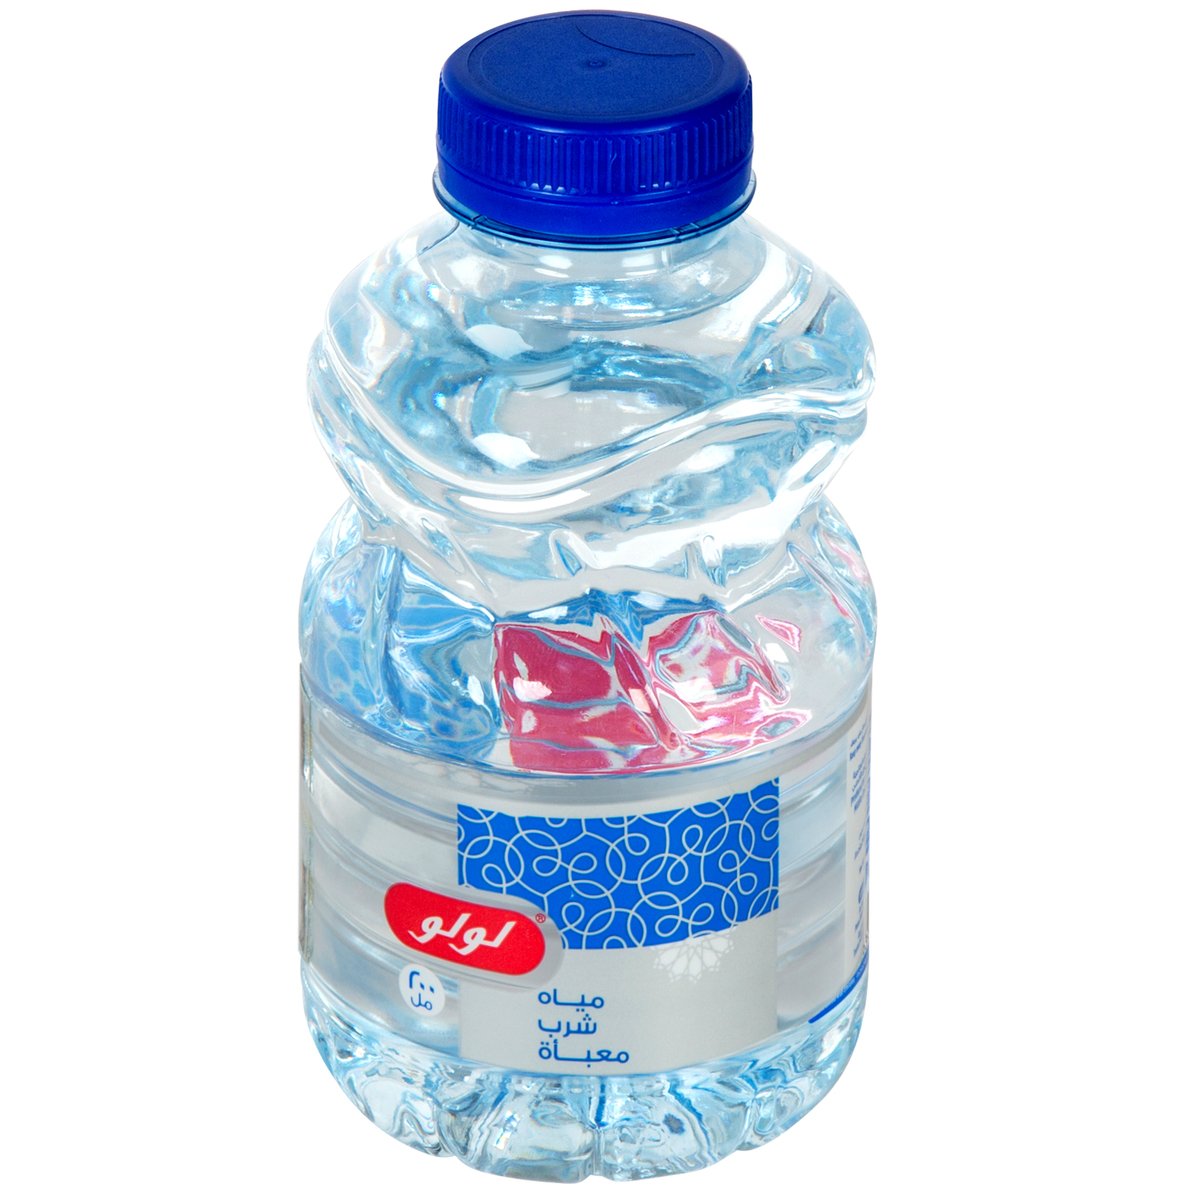 Lulu Bottled Drinking Water 24 x 200 ml